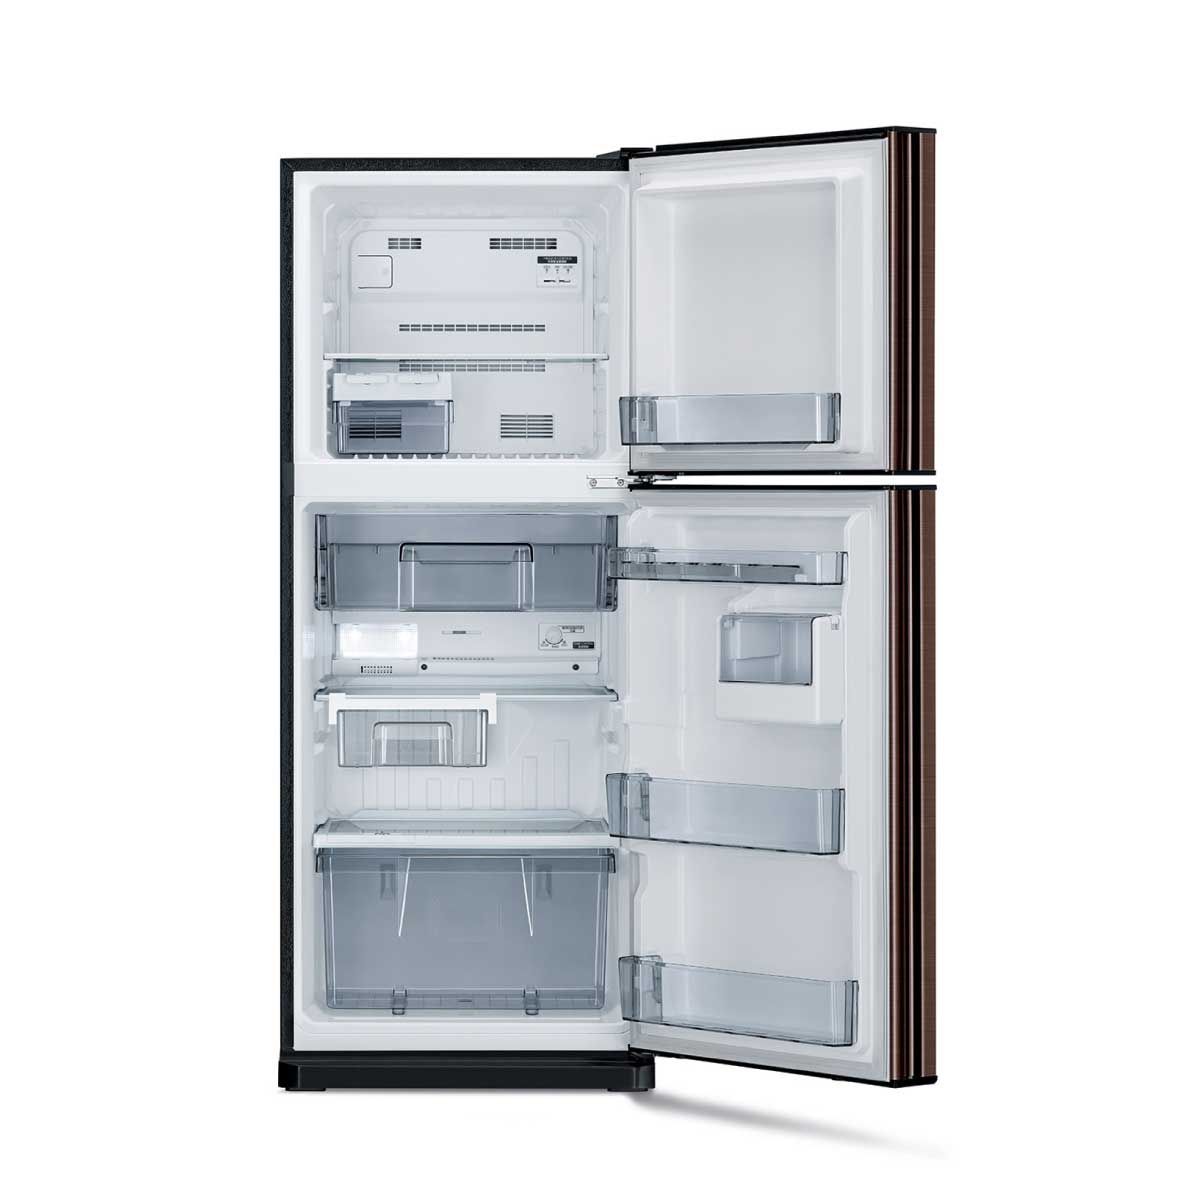 MITSUBISHI ELECTRIC ตู้เย็น 2 ประตู 7.7คิว INVERTOR สีน้ำตาล รุ่นMR-FC23ET